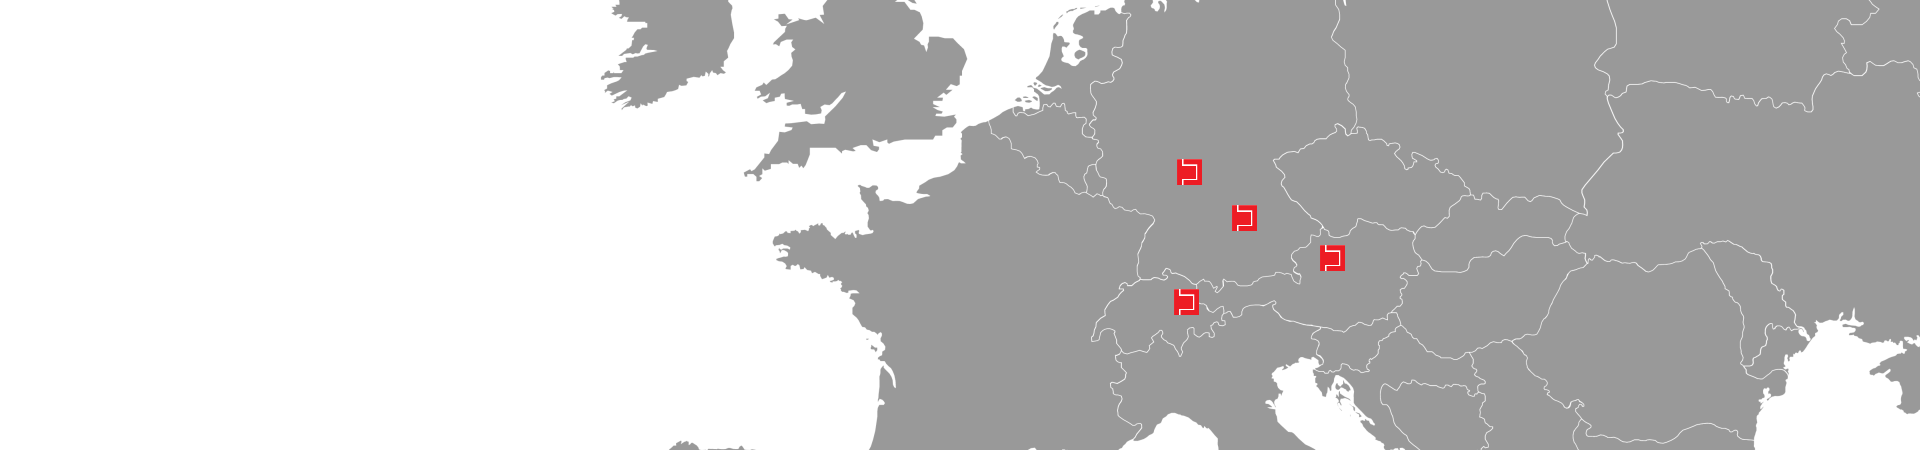 Unsere Standorte in der DACH-Region